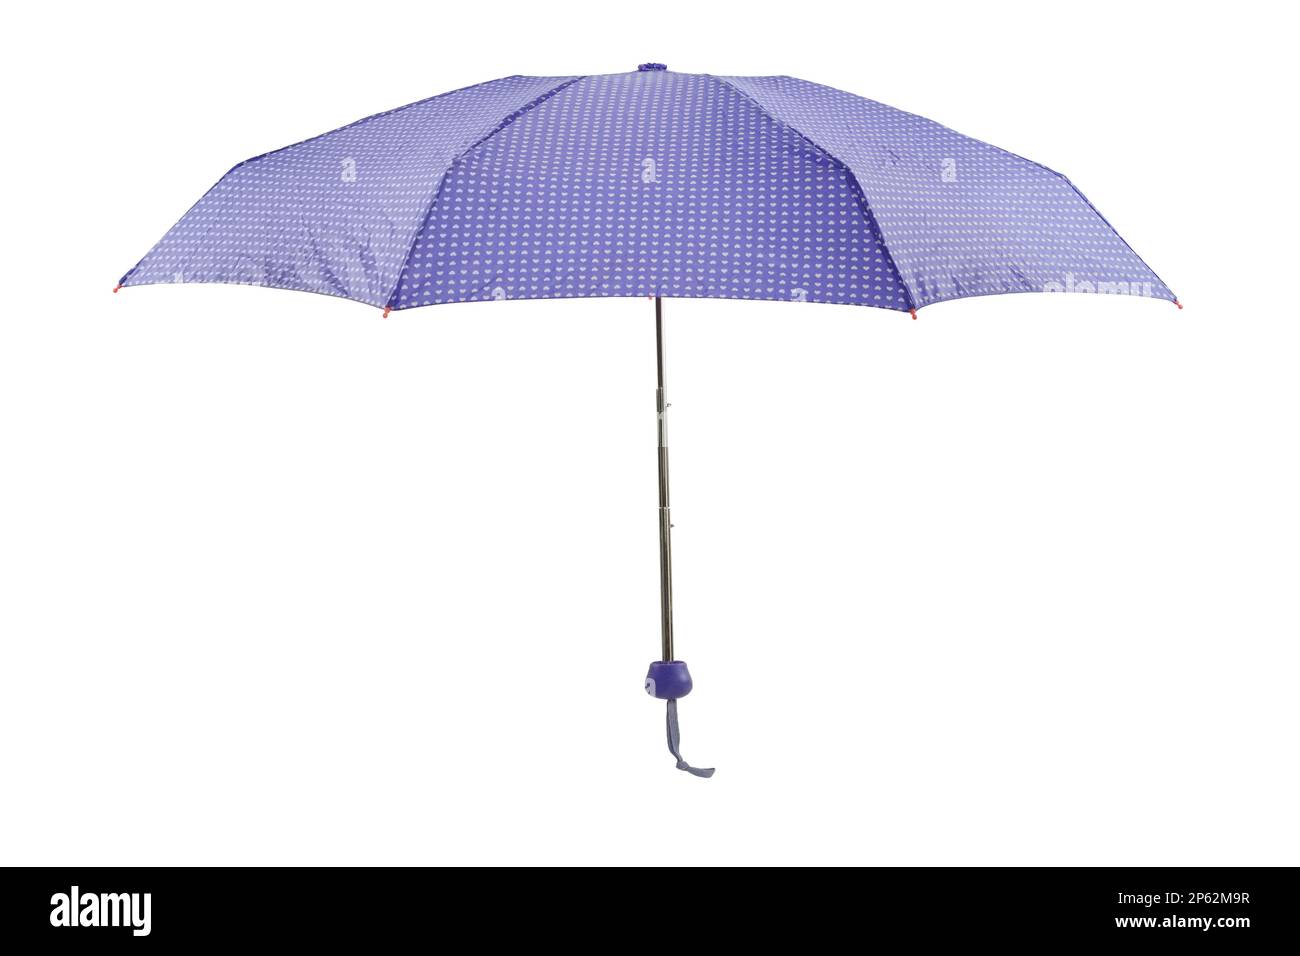 Offener lilafarbener Schirm, isoliert auf weißem Hintergrund Stockfoto